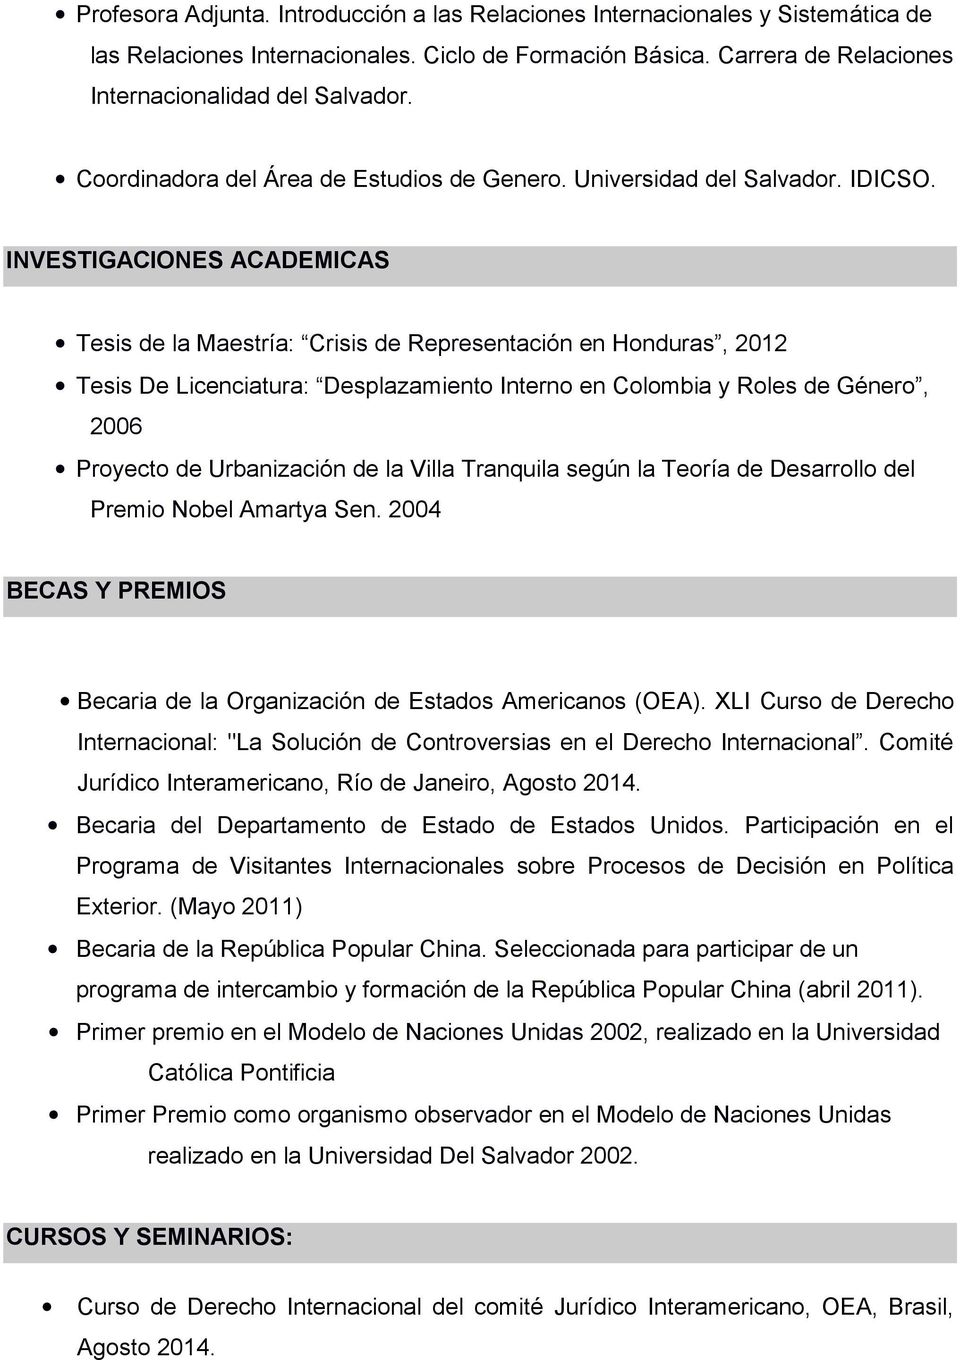 INVESTIGACIONES ACADEMICAS Tesis de la Maestría: Crisis de Representación en Honduras, 2012 Tesis De Licenciatura: Desplazamiento Interno en Colombia y Roles de Género, 2006 Proyecto de Urbanización